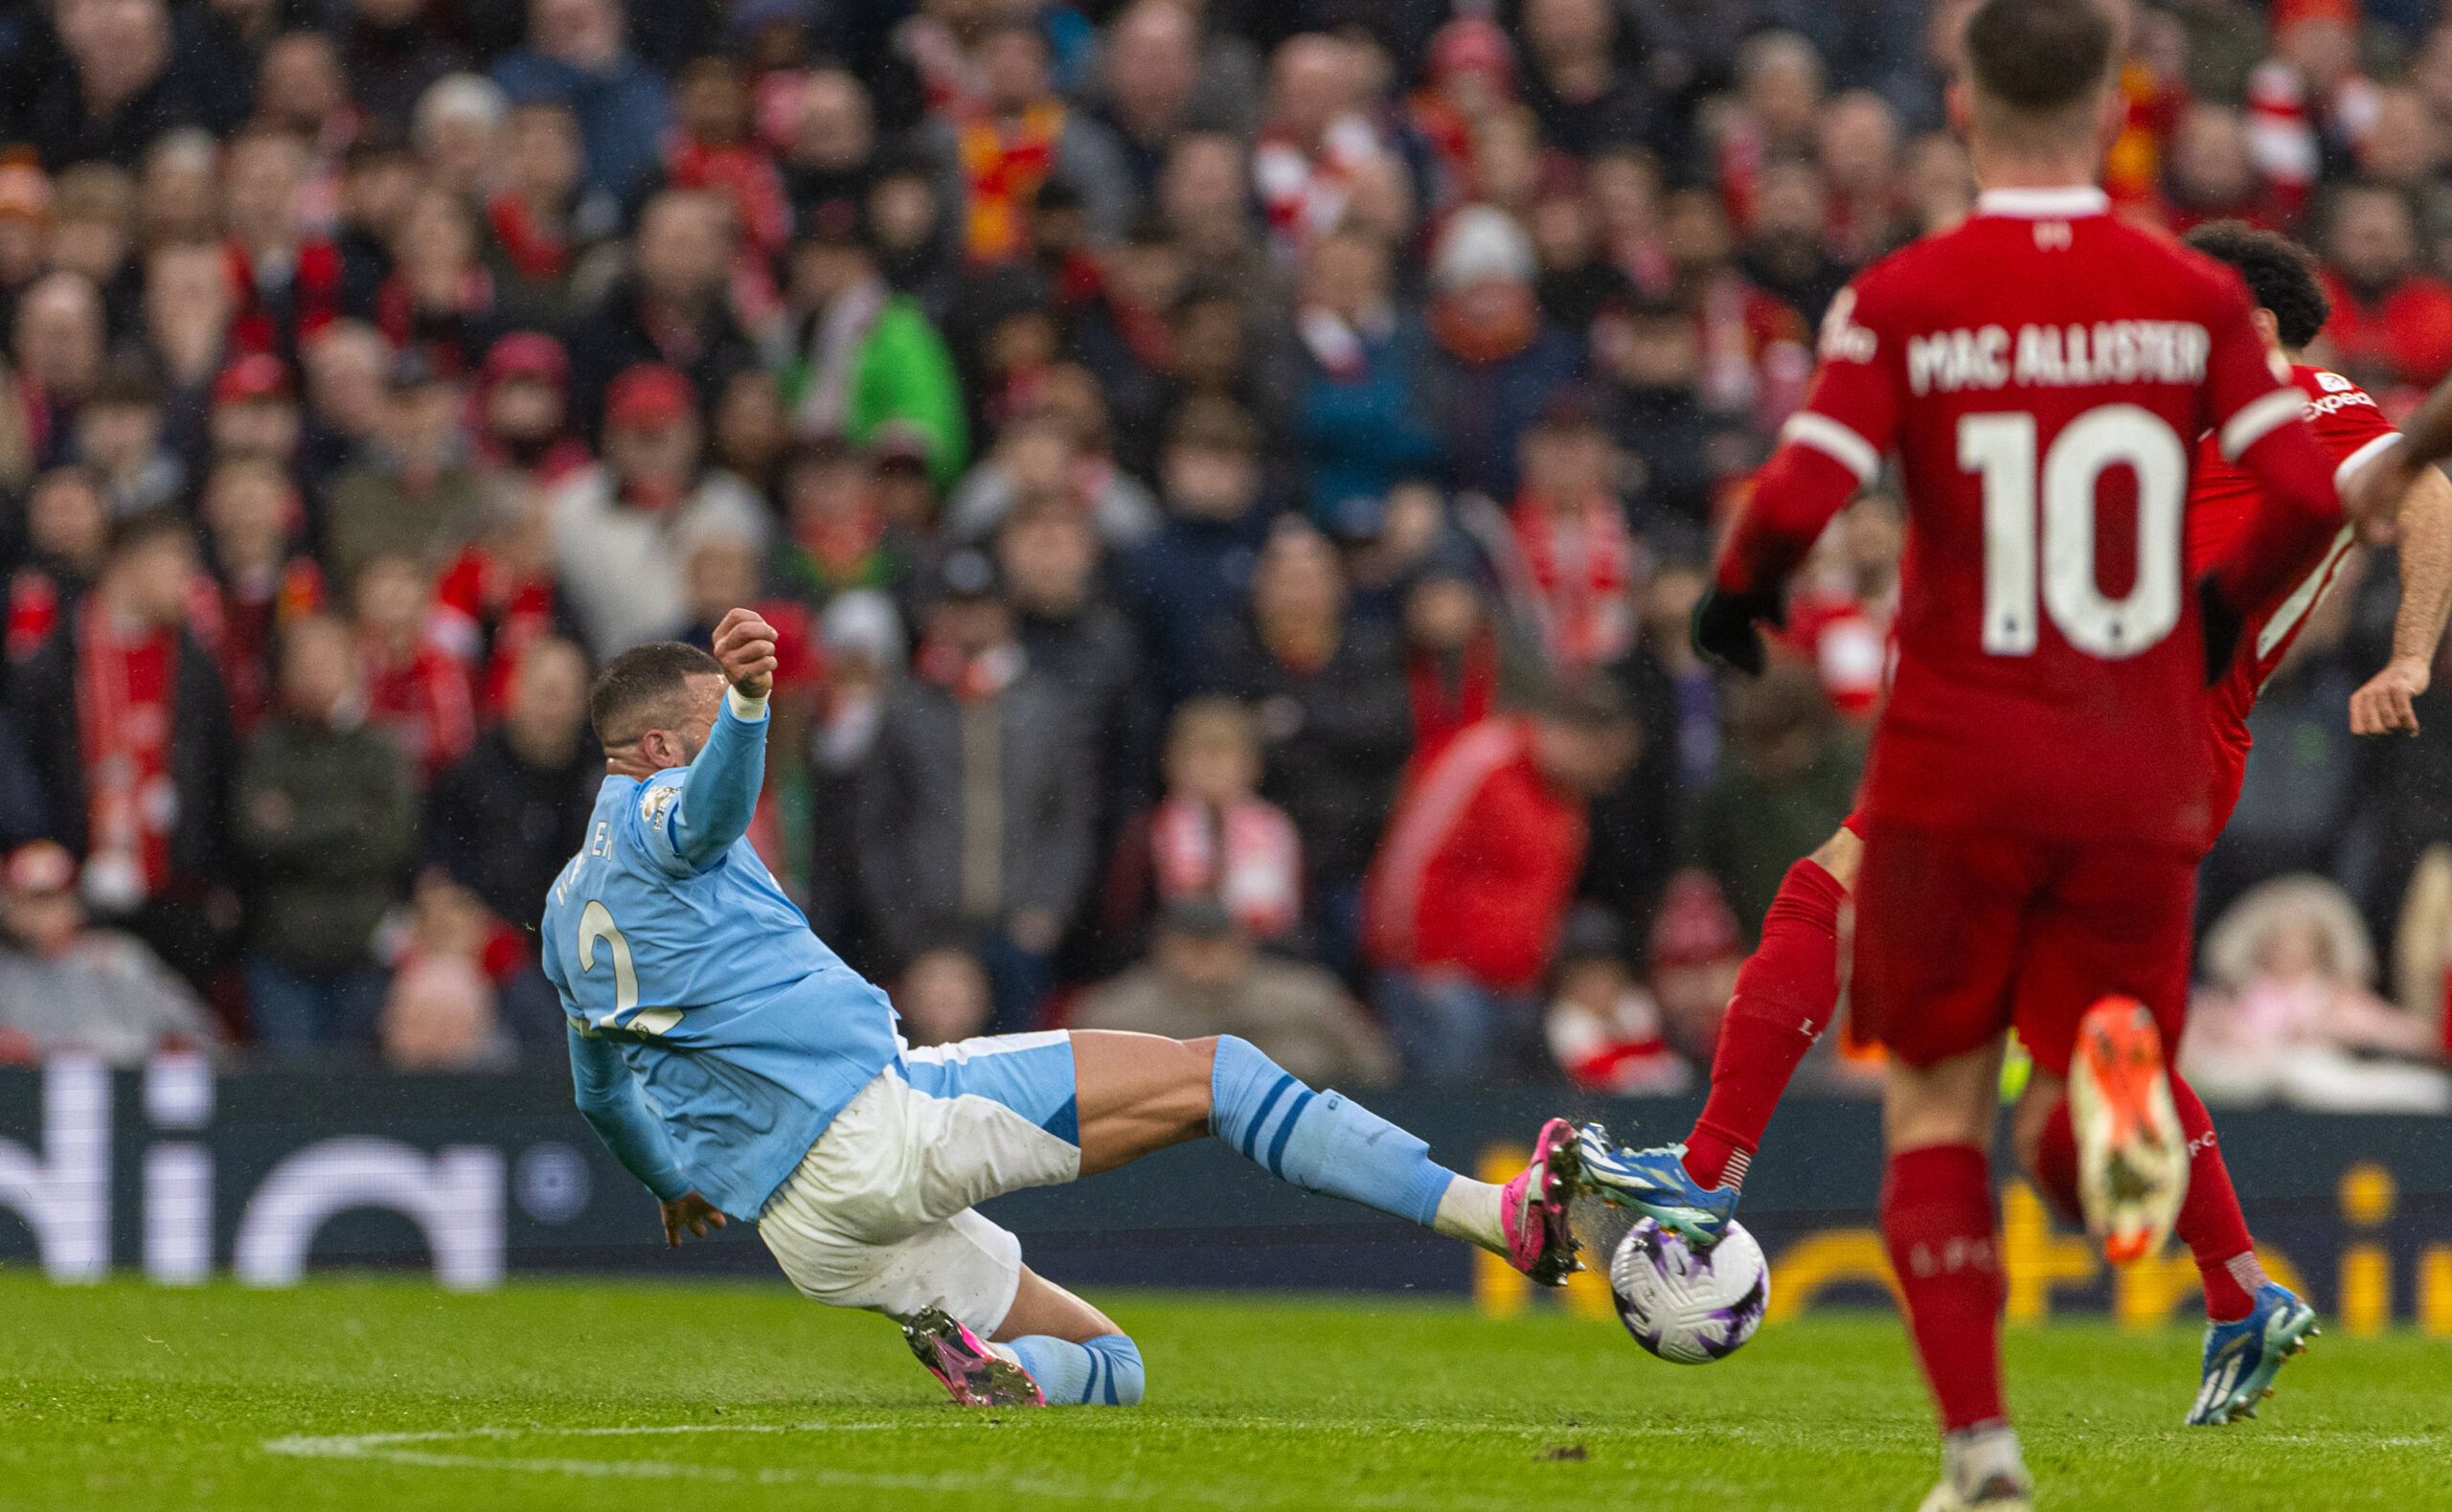 Manchester City defender Kyle Walker studs up challenge on Mohamed Salah